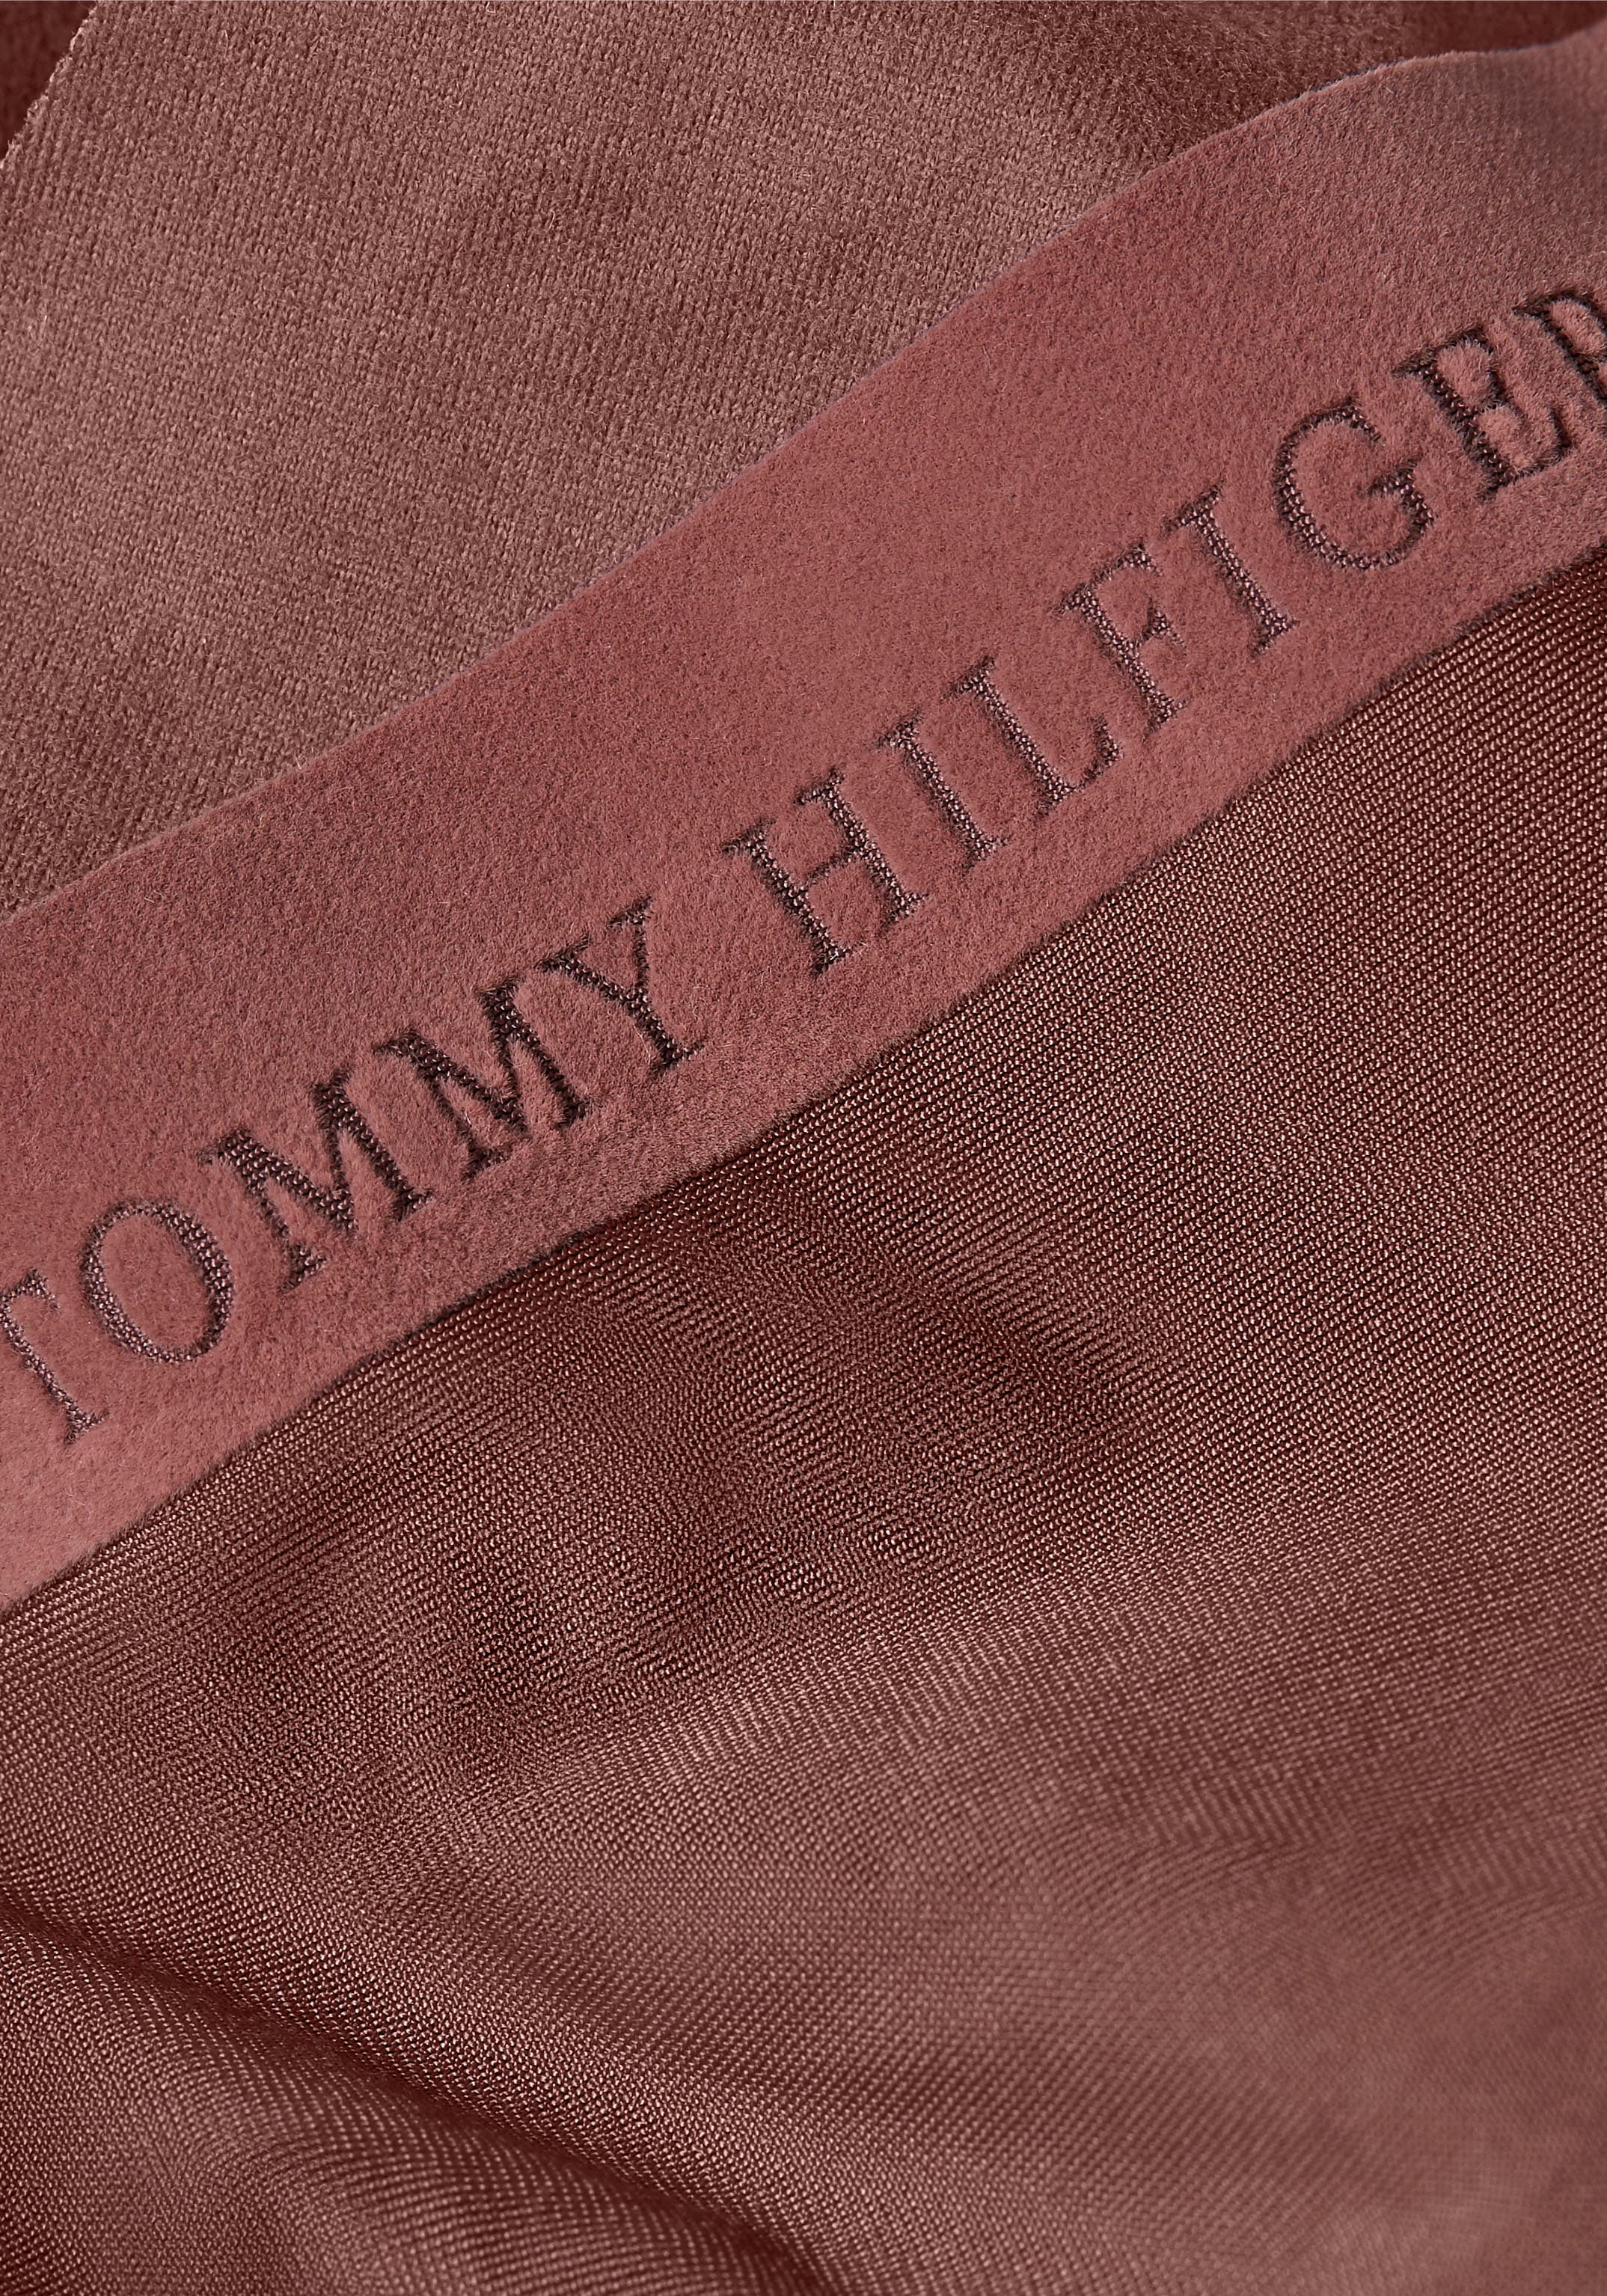 Tommy Hilfiger Underwear T-String, Ultra Soft